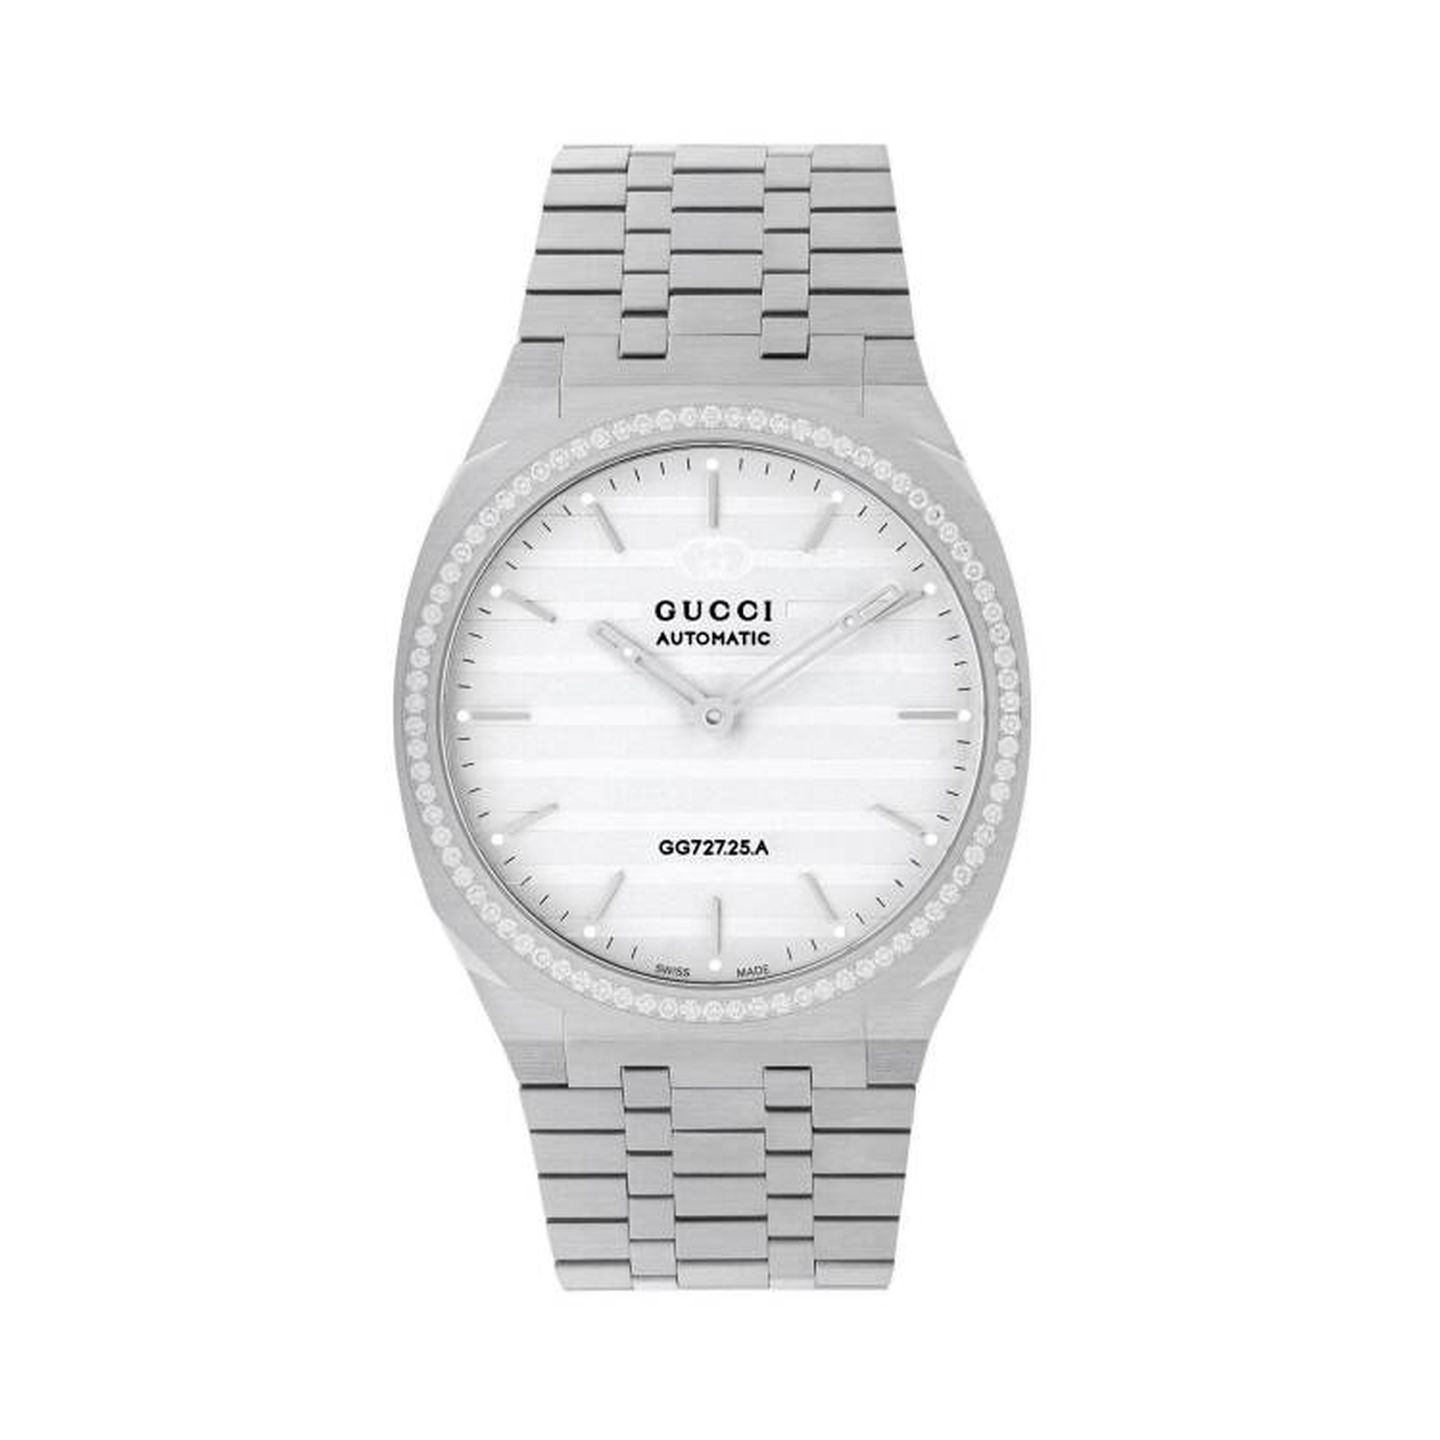 El ultrafino y elegante reloj Gucci 25H, la elección de Jessica Chastain. (Cortesía)